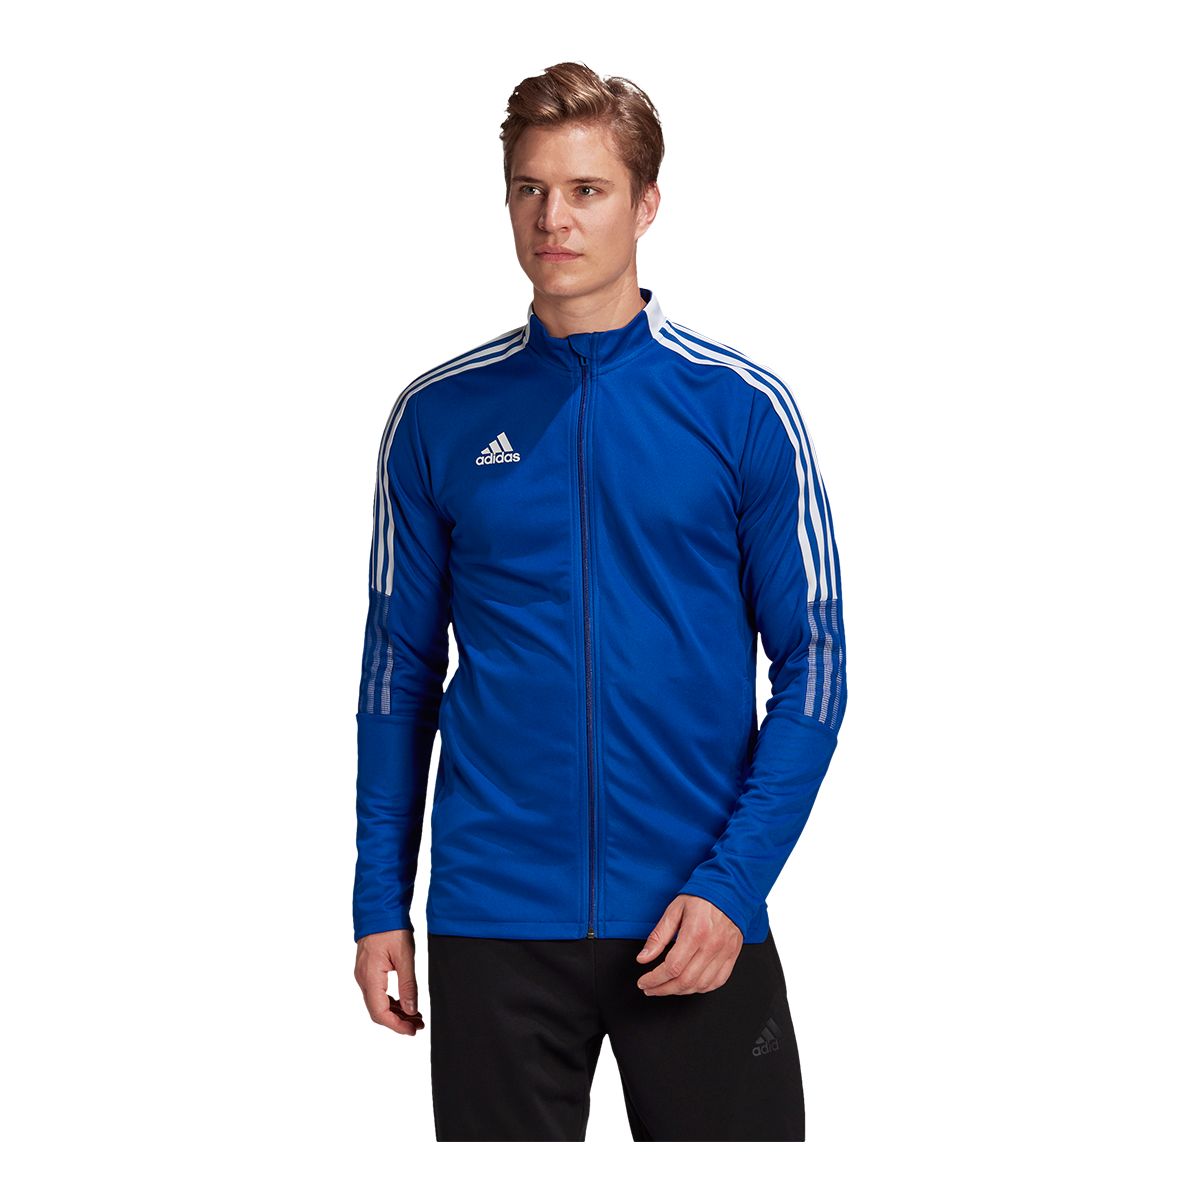 Men's Athletic & Running Jackets